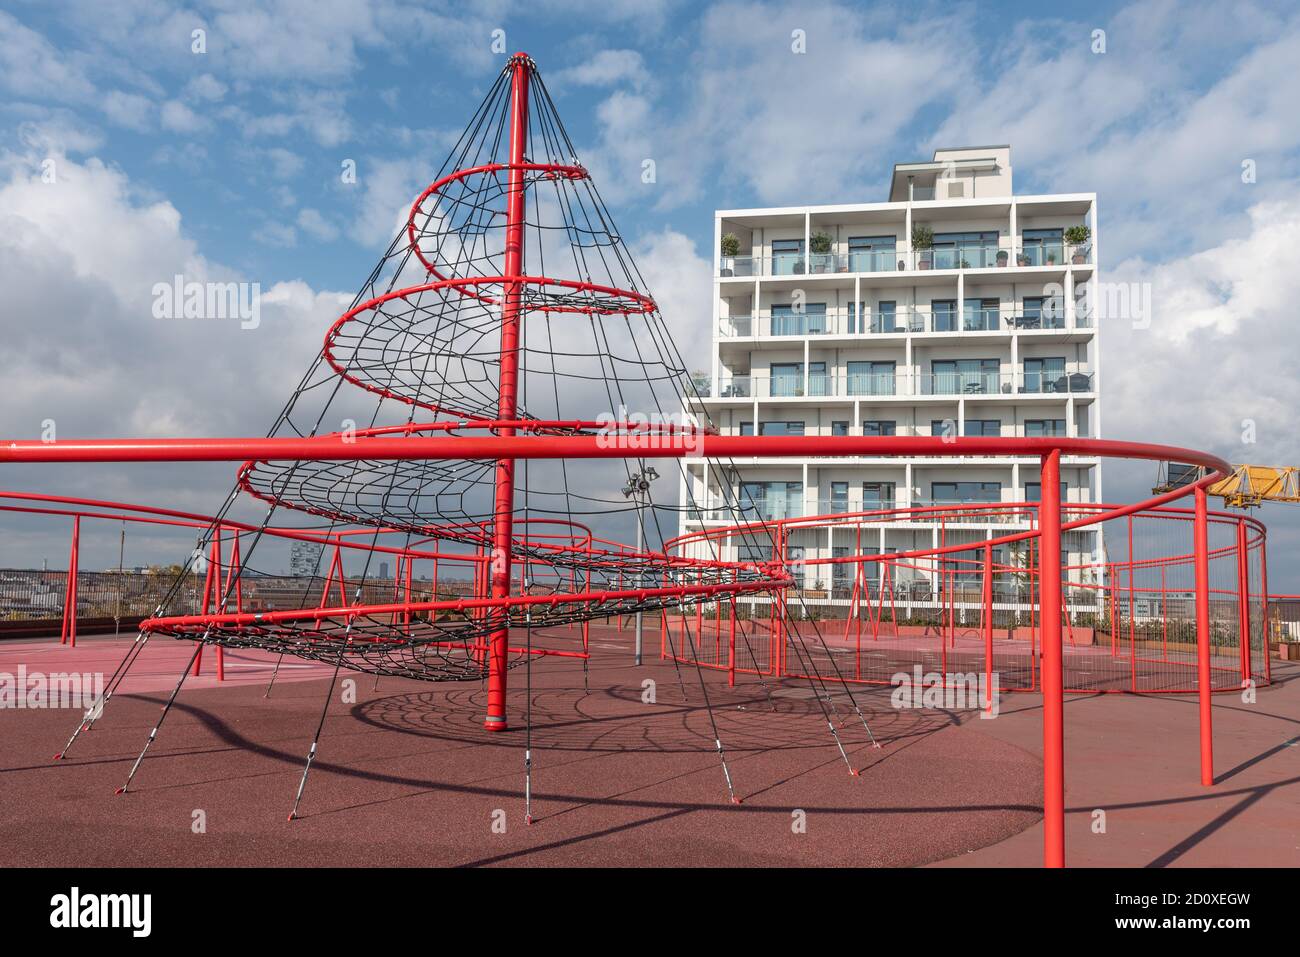 Konditaget Lüders ist ein Spielplatz auf einem Dach 24 Meter vom Boden entfernt im Nordhafen von Kopenhagen, 30. September 2020 Stockfoto